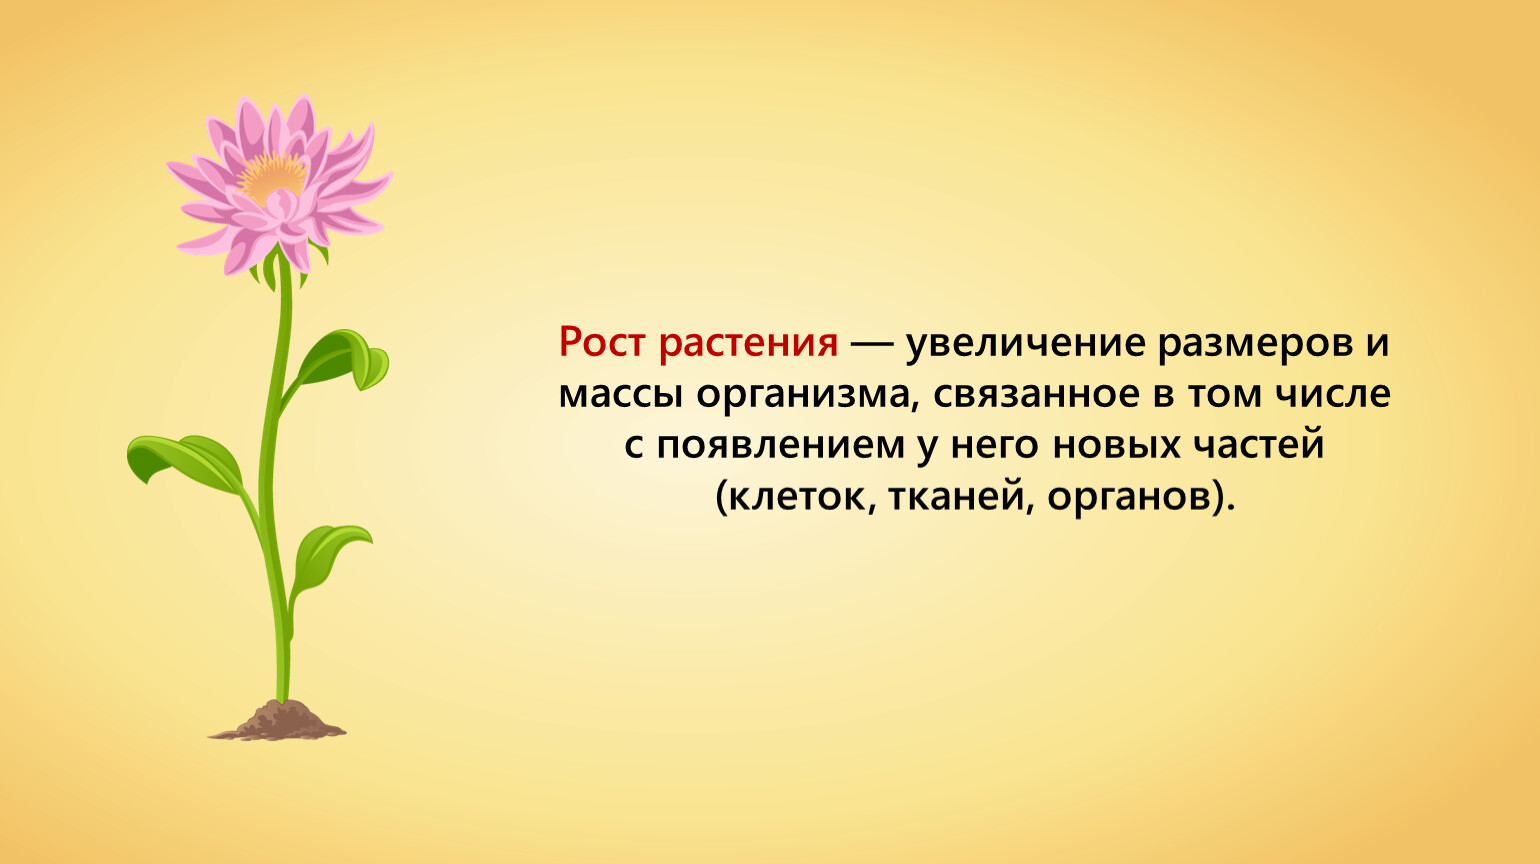 Значение роста в жизни растений 5. Рост растений. Процессы жизни растений. Появление цветка. Процесс роста растений.